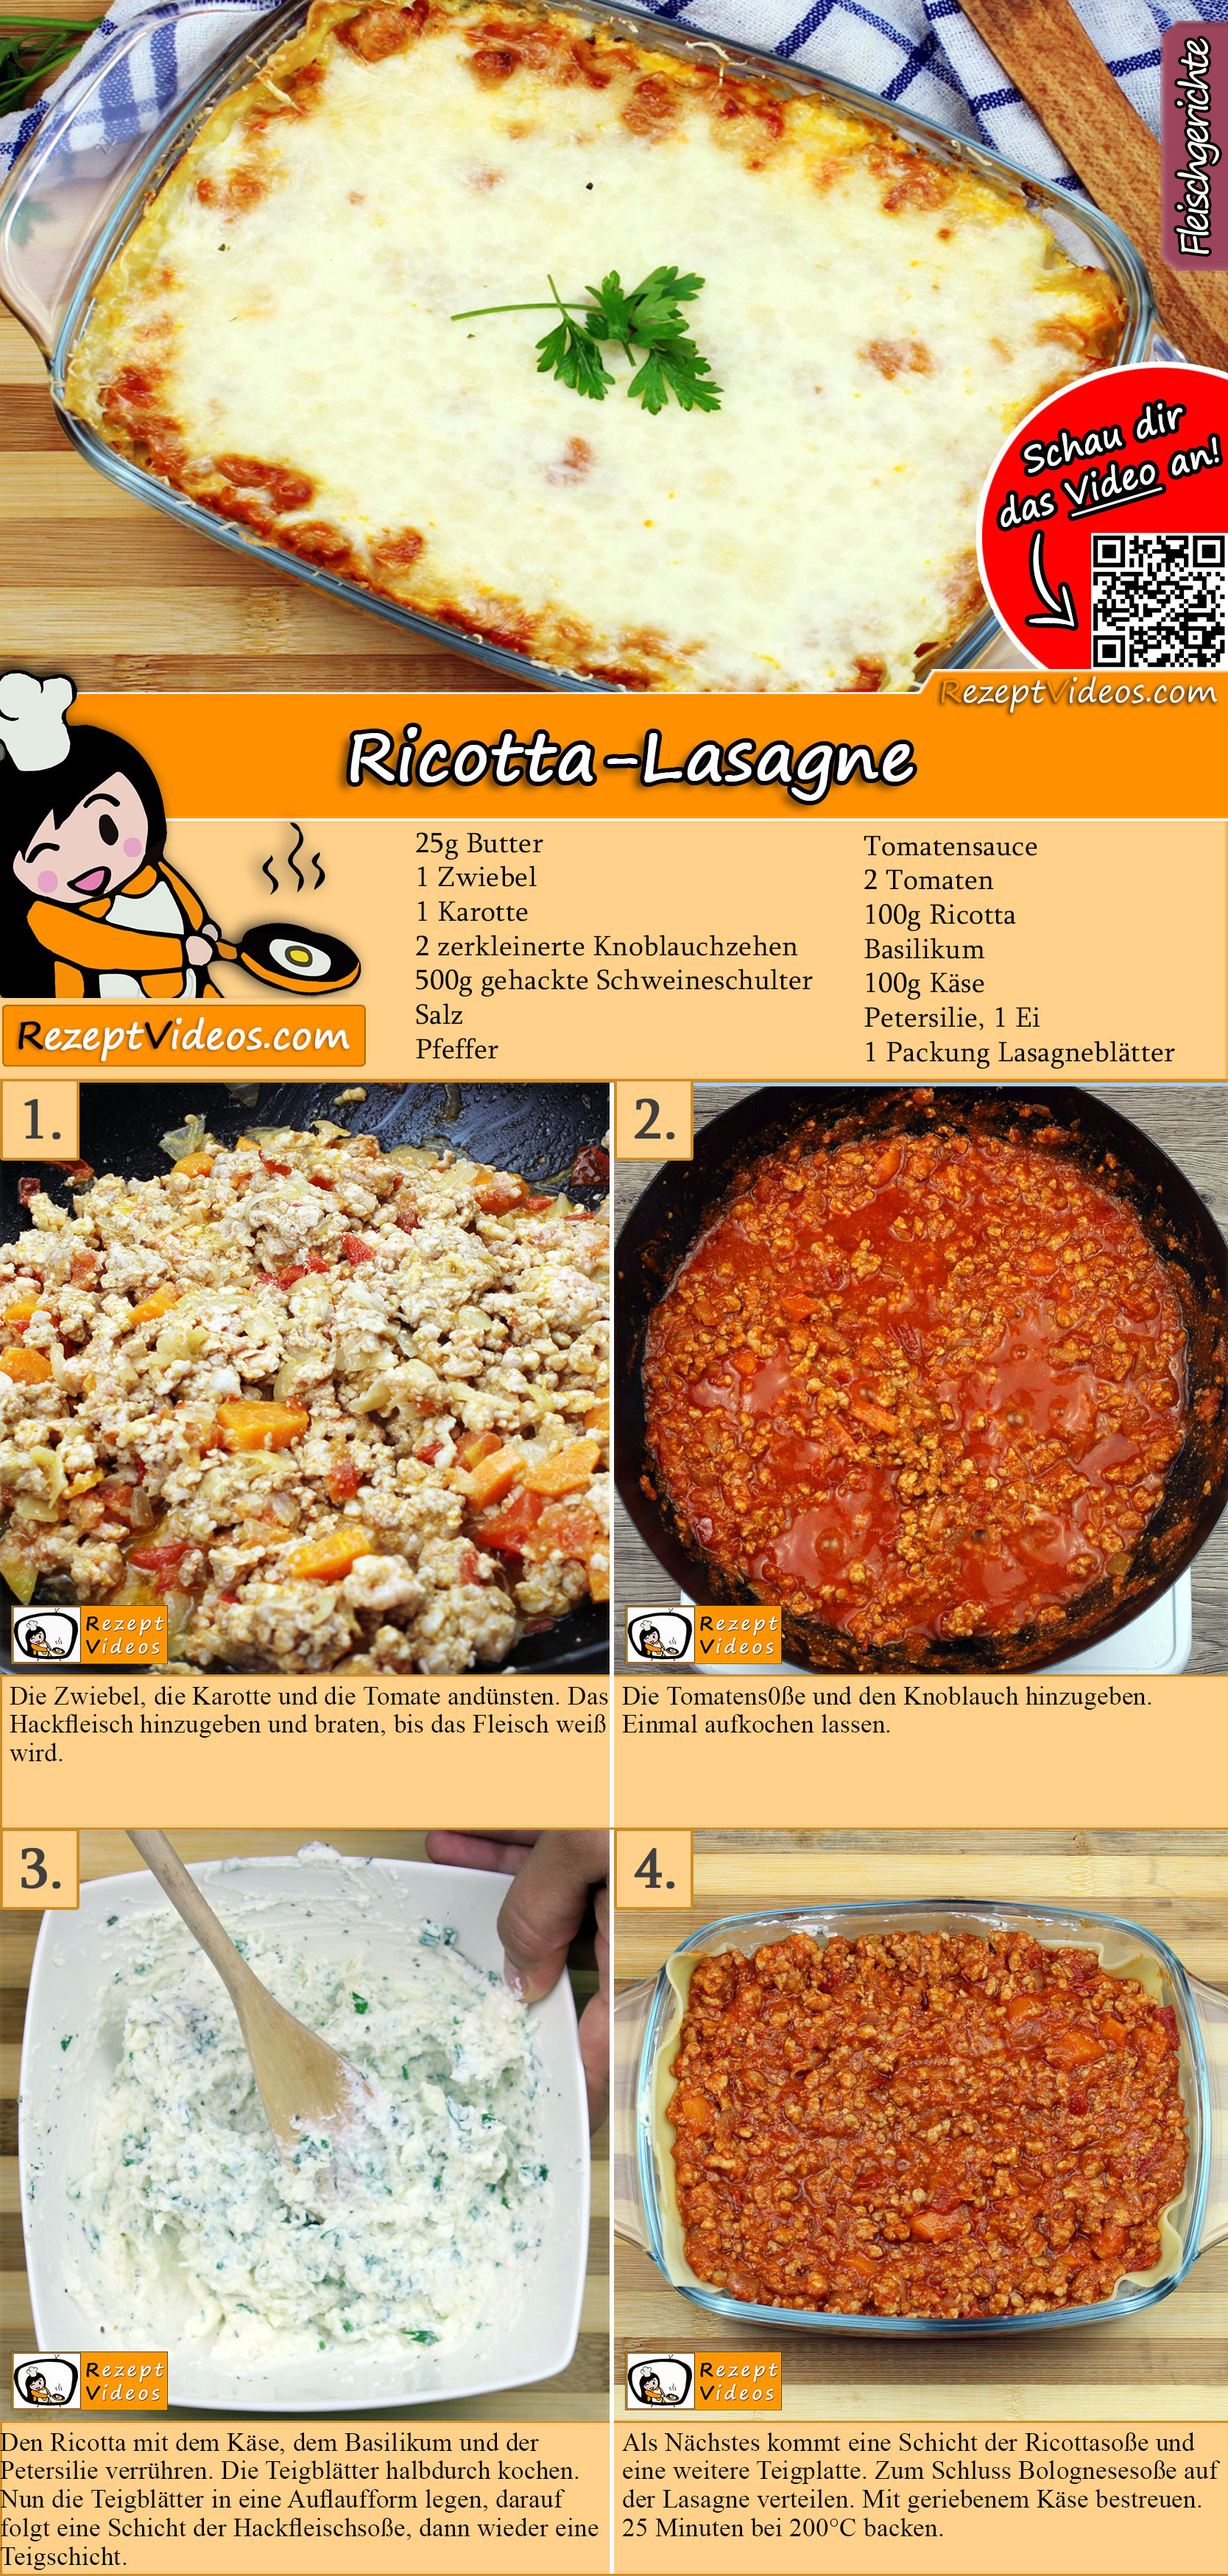 Ricotta-Lasagne Rezept mit Video